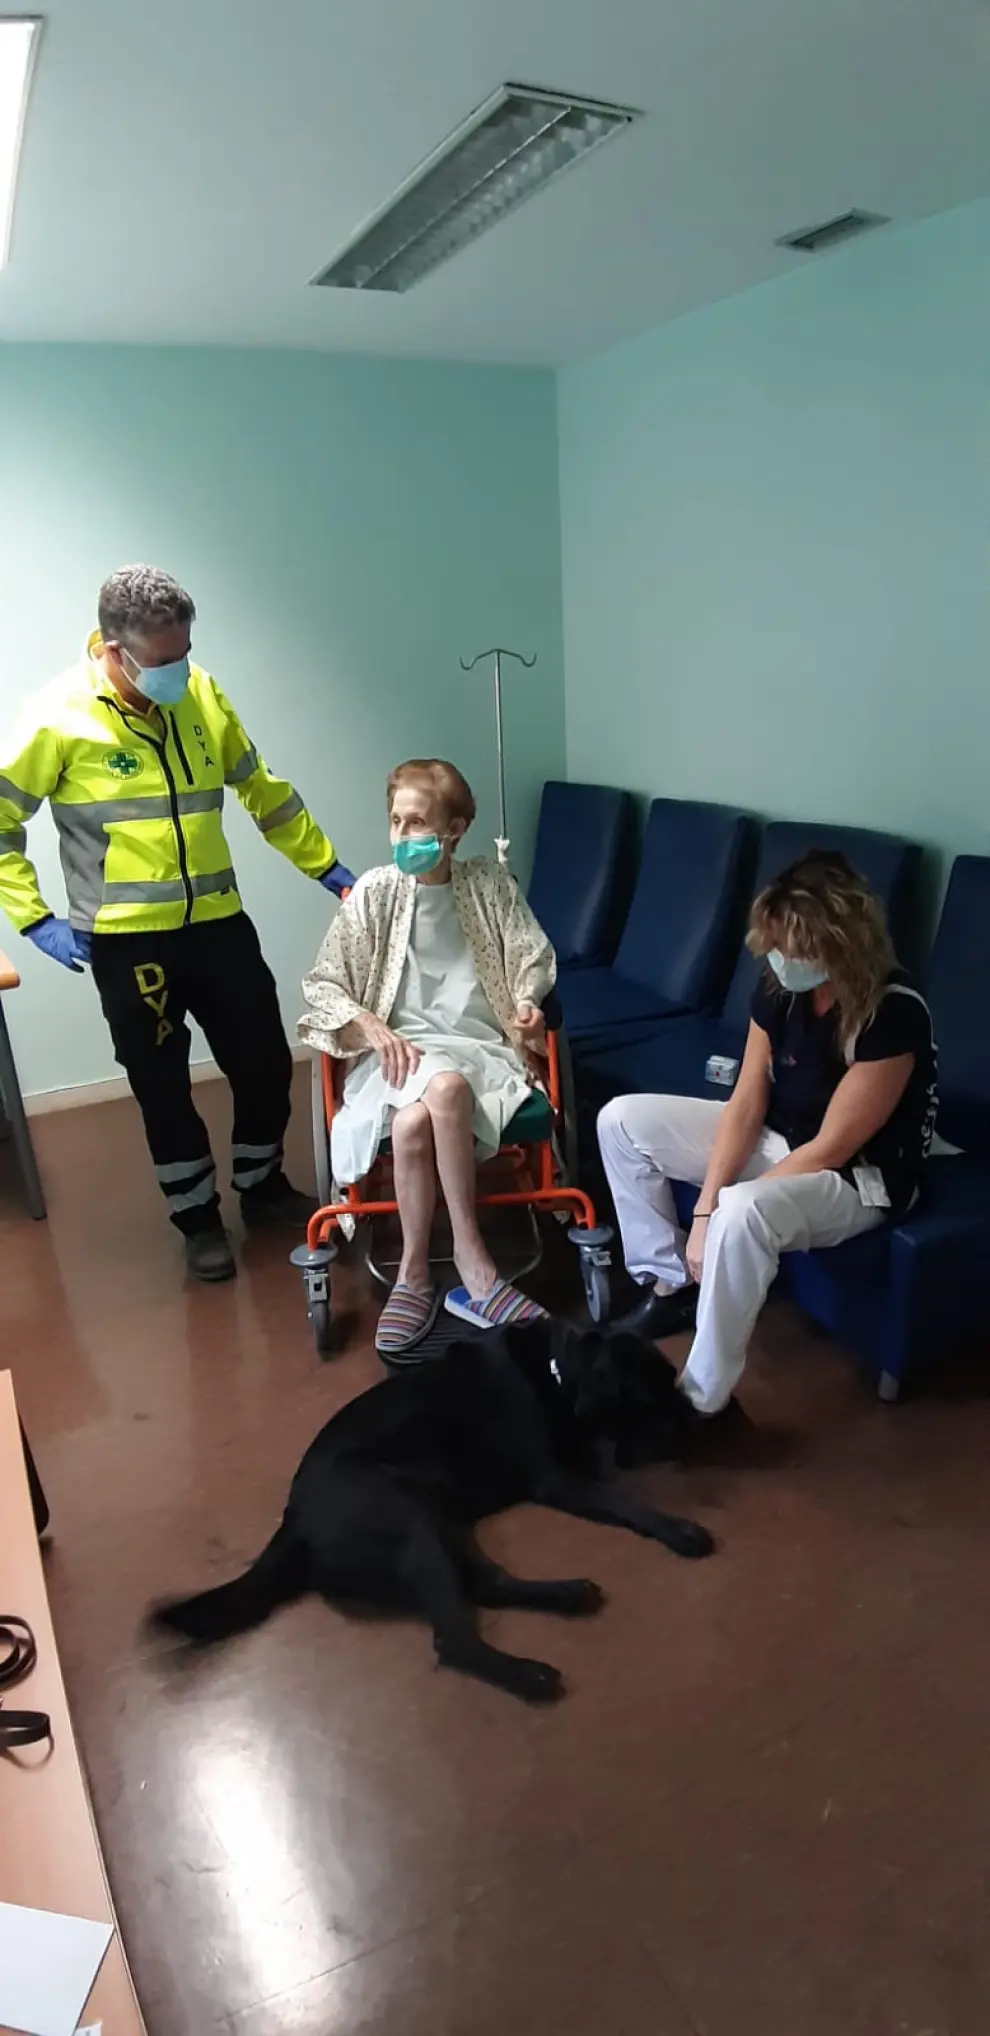 Reencuentro de Soledad y su perro guía en el hospital Miguel Servet